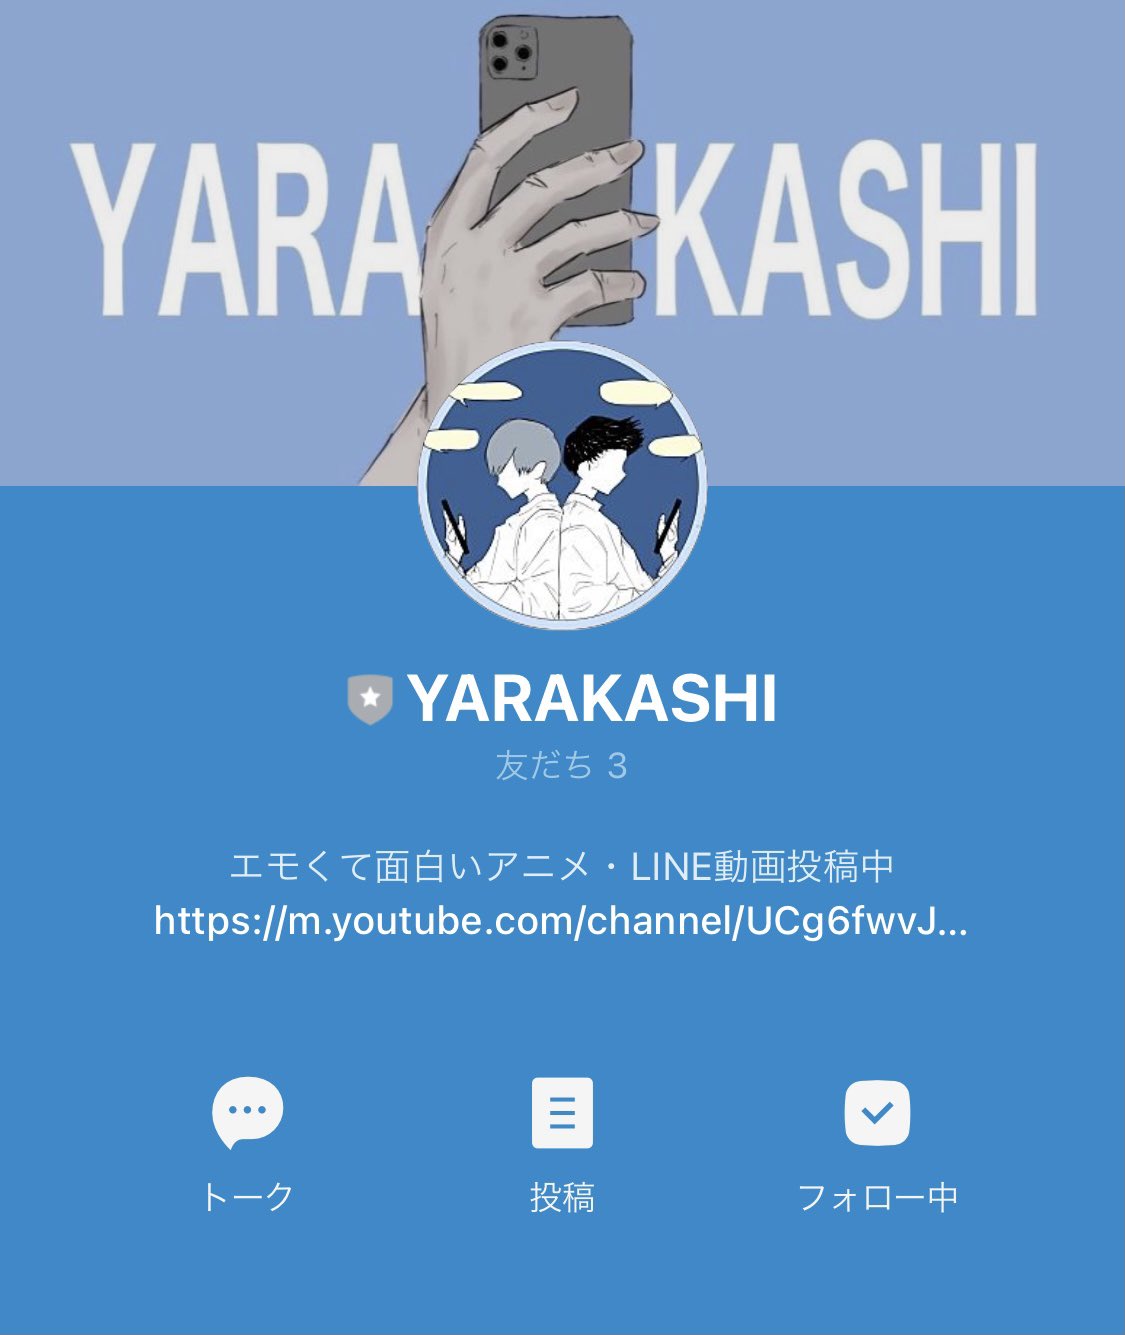 Yarakashi Yarakashi100 Twitter